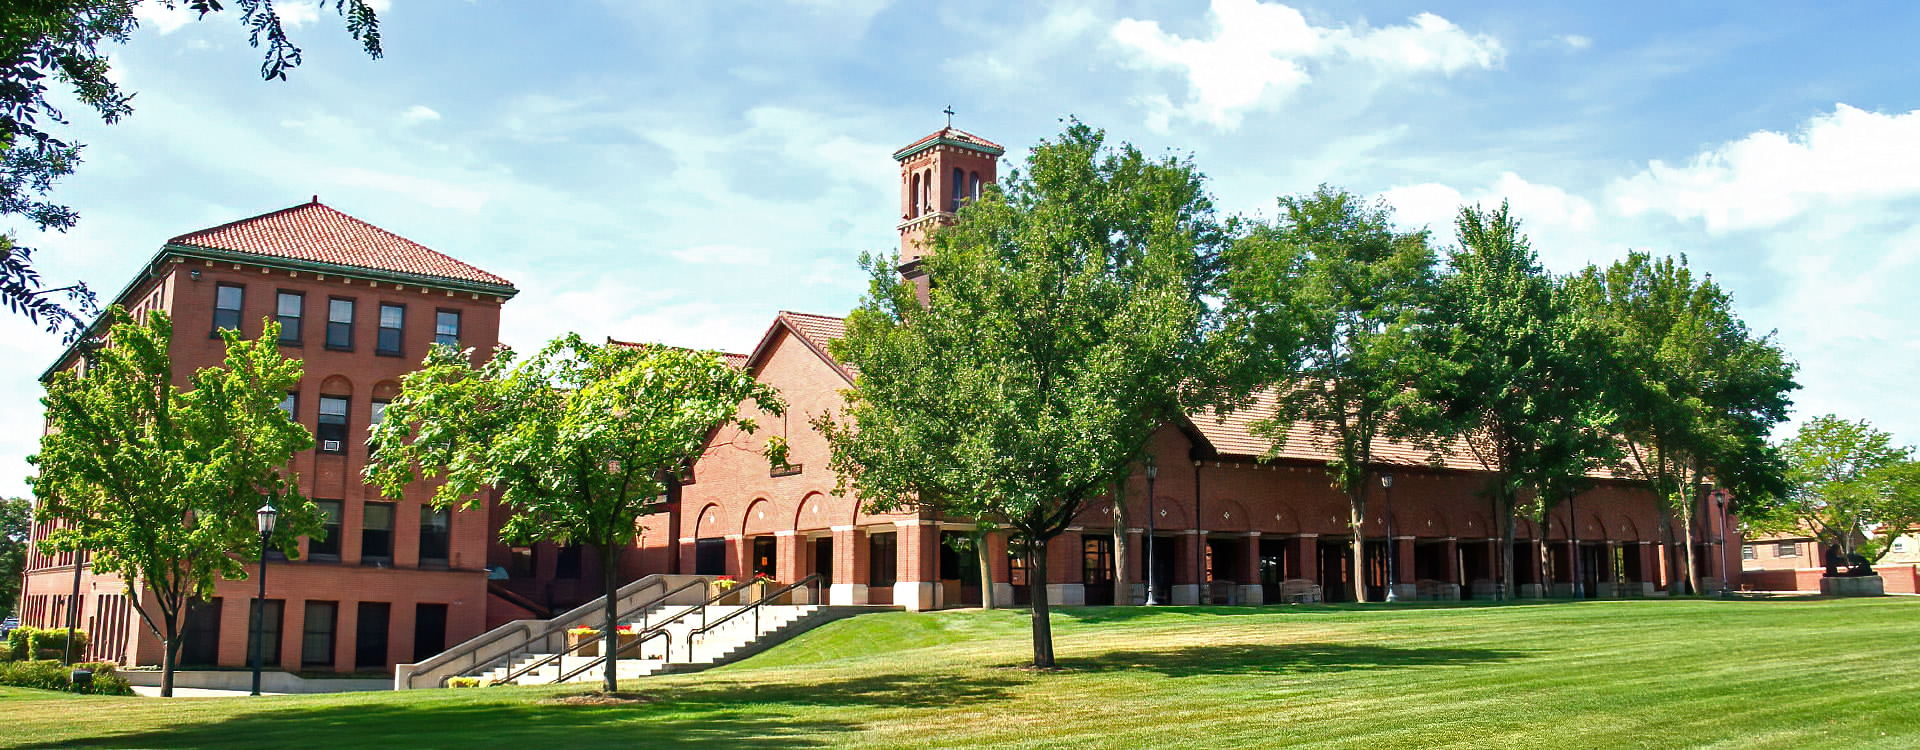 Campus Center in summer